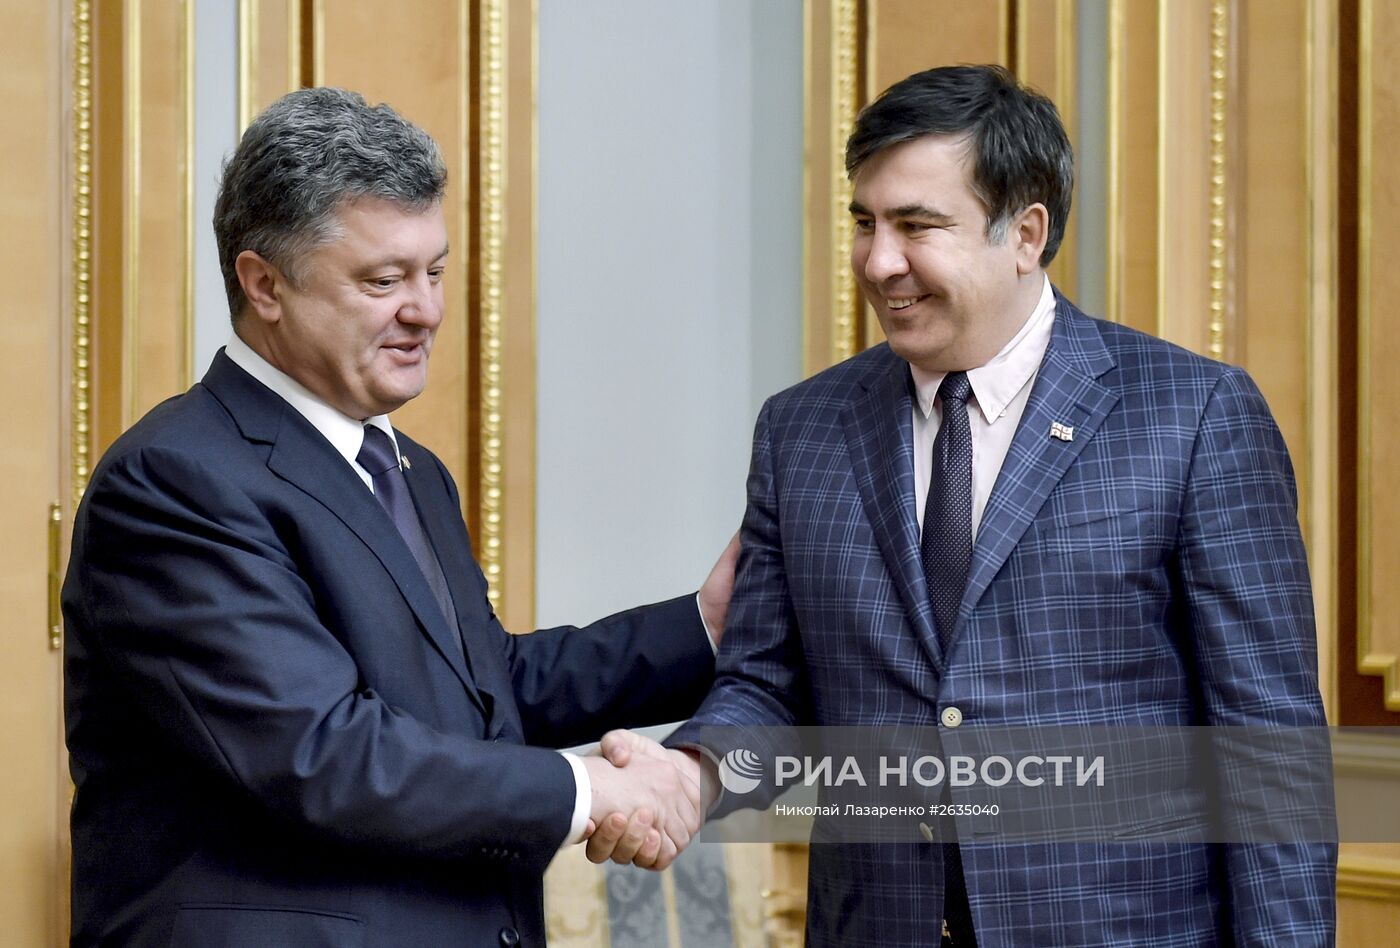 Встреча П.Порошенко и М.Саакашвили